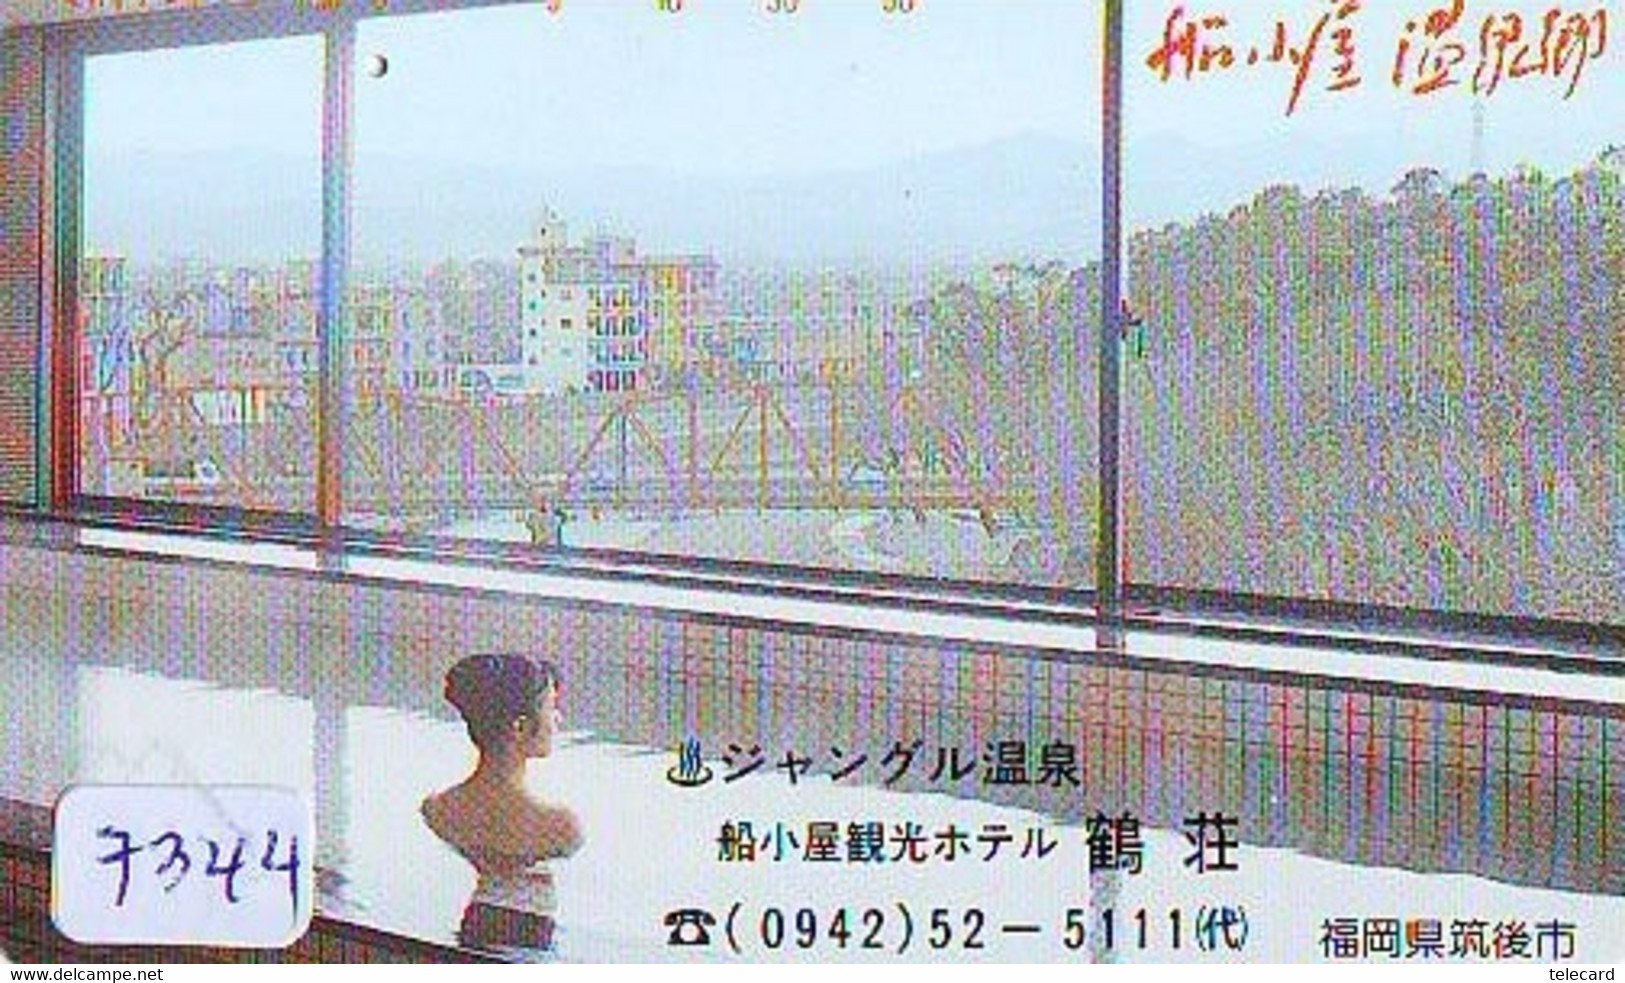 Télécarte Japon * FEMME EROTIQUE (7344) BATH * PHONECARD JAPAN * TELEFONKARTE *  BATHCLOTHES LINGERIE - Fashion